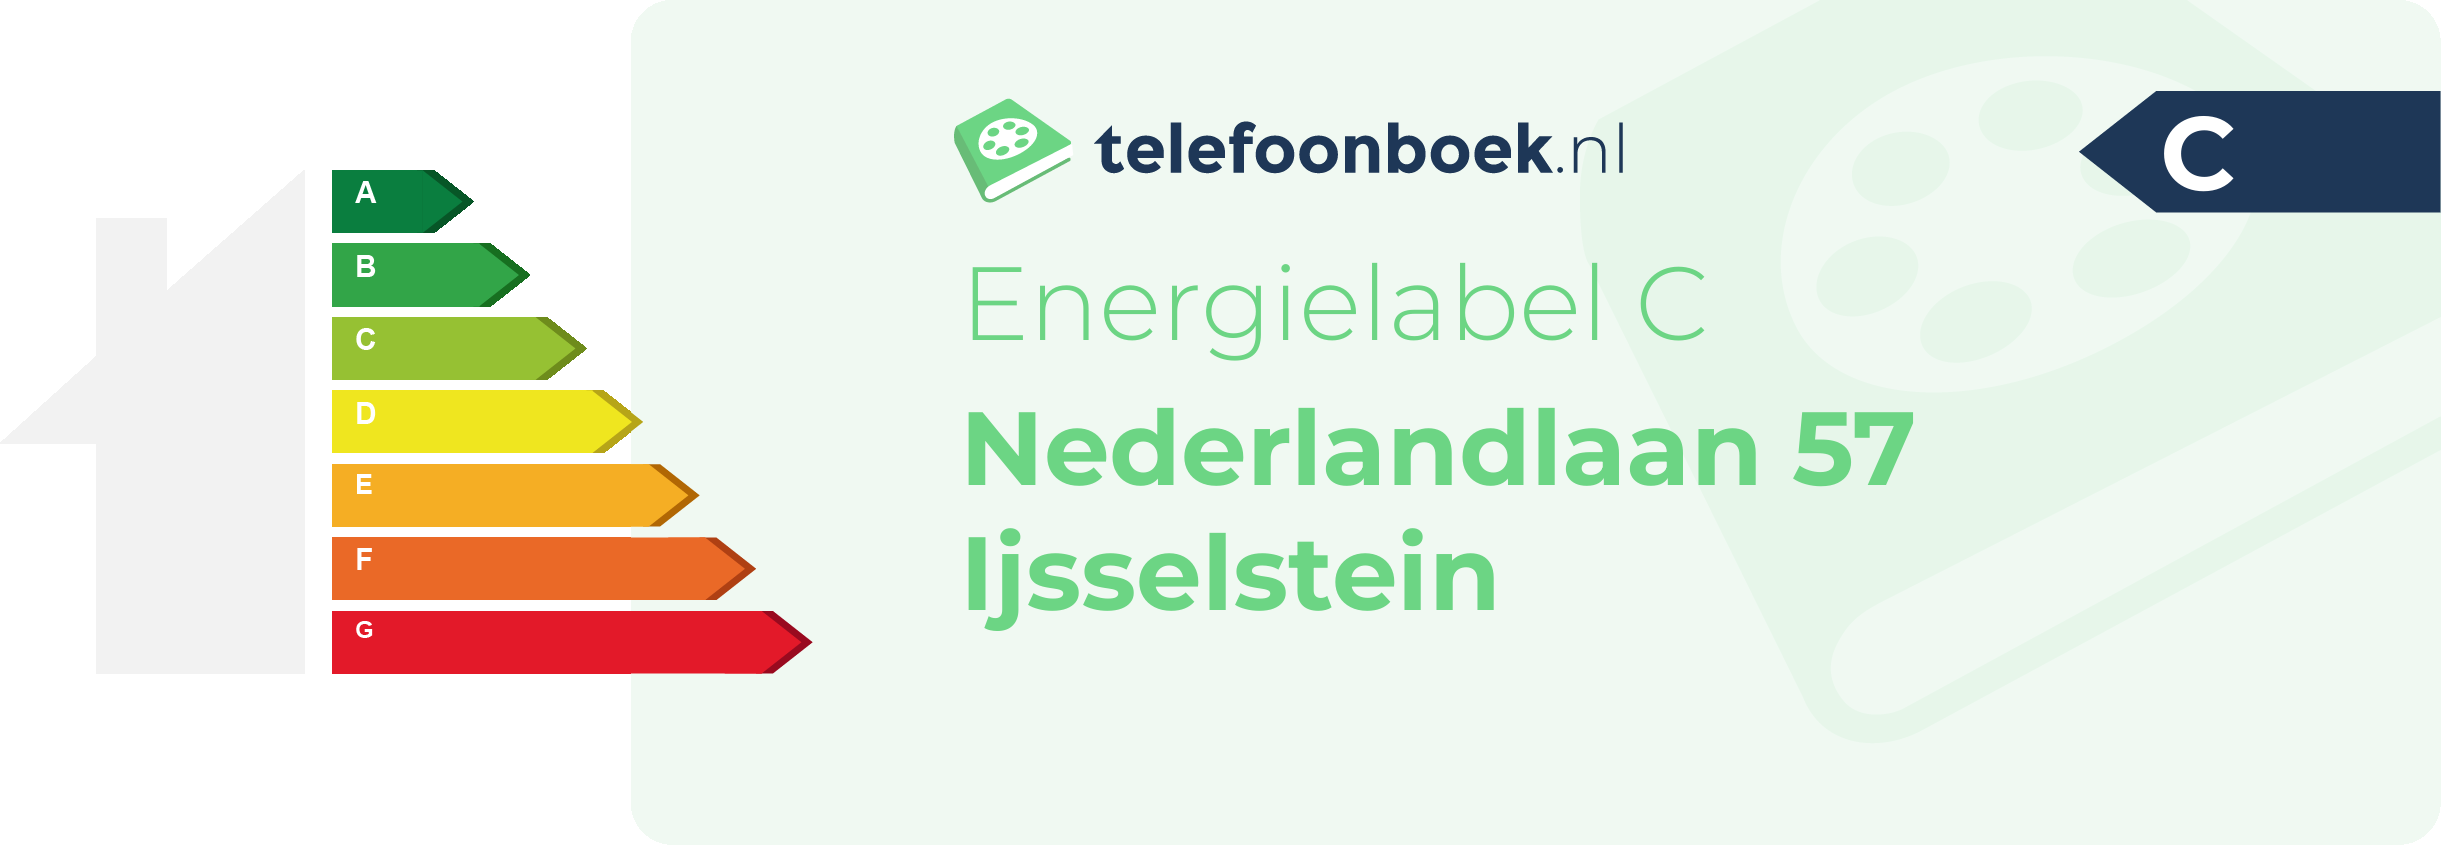 Energielabel Nederlandlaan 57 Ijsselstein